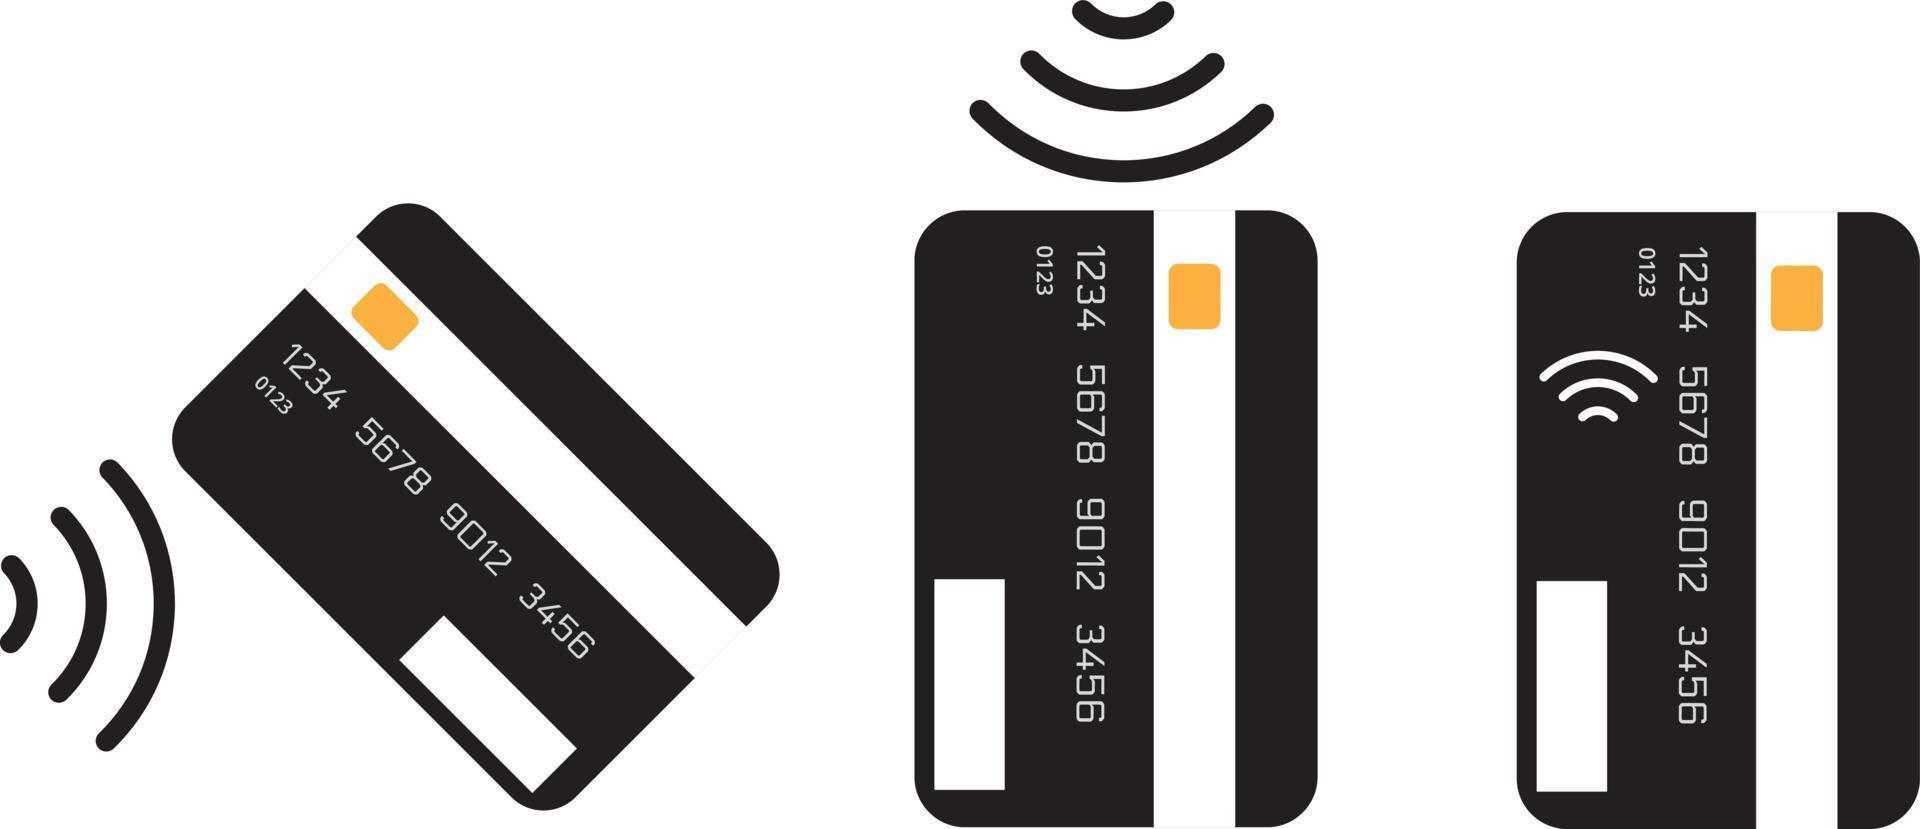 Kontaktlose Zahlung, Kreditkarte und Handtippen Pay Wave Logo. Symbol für Vektor-Wireless-NFC und kontaktloses Pay-Pass-Symbol vektor